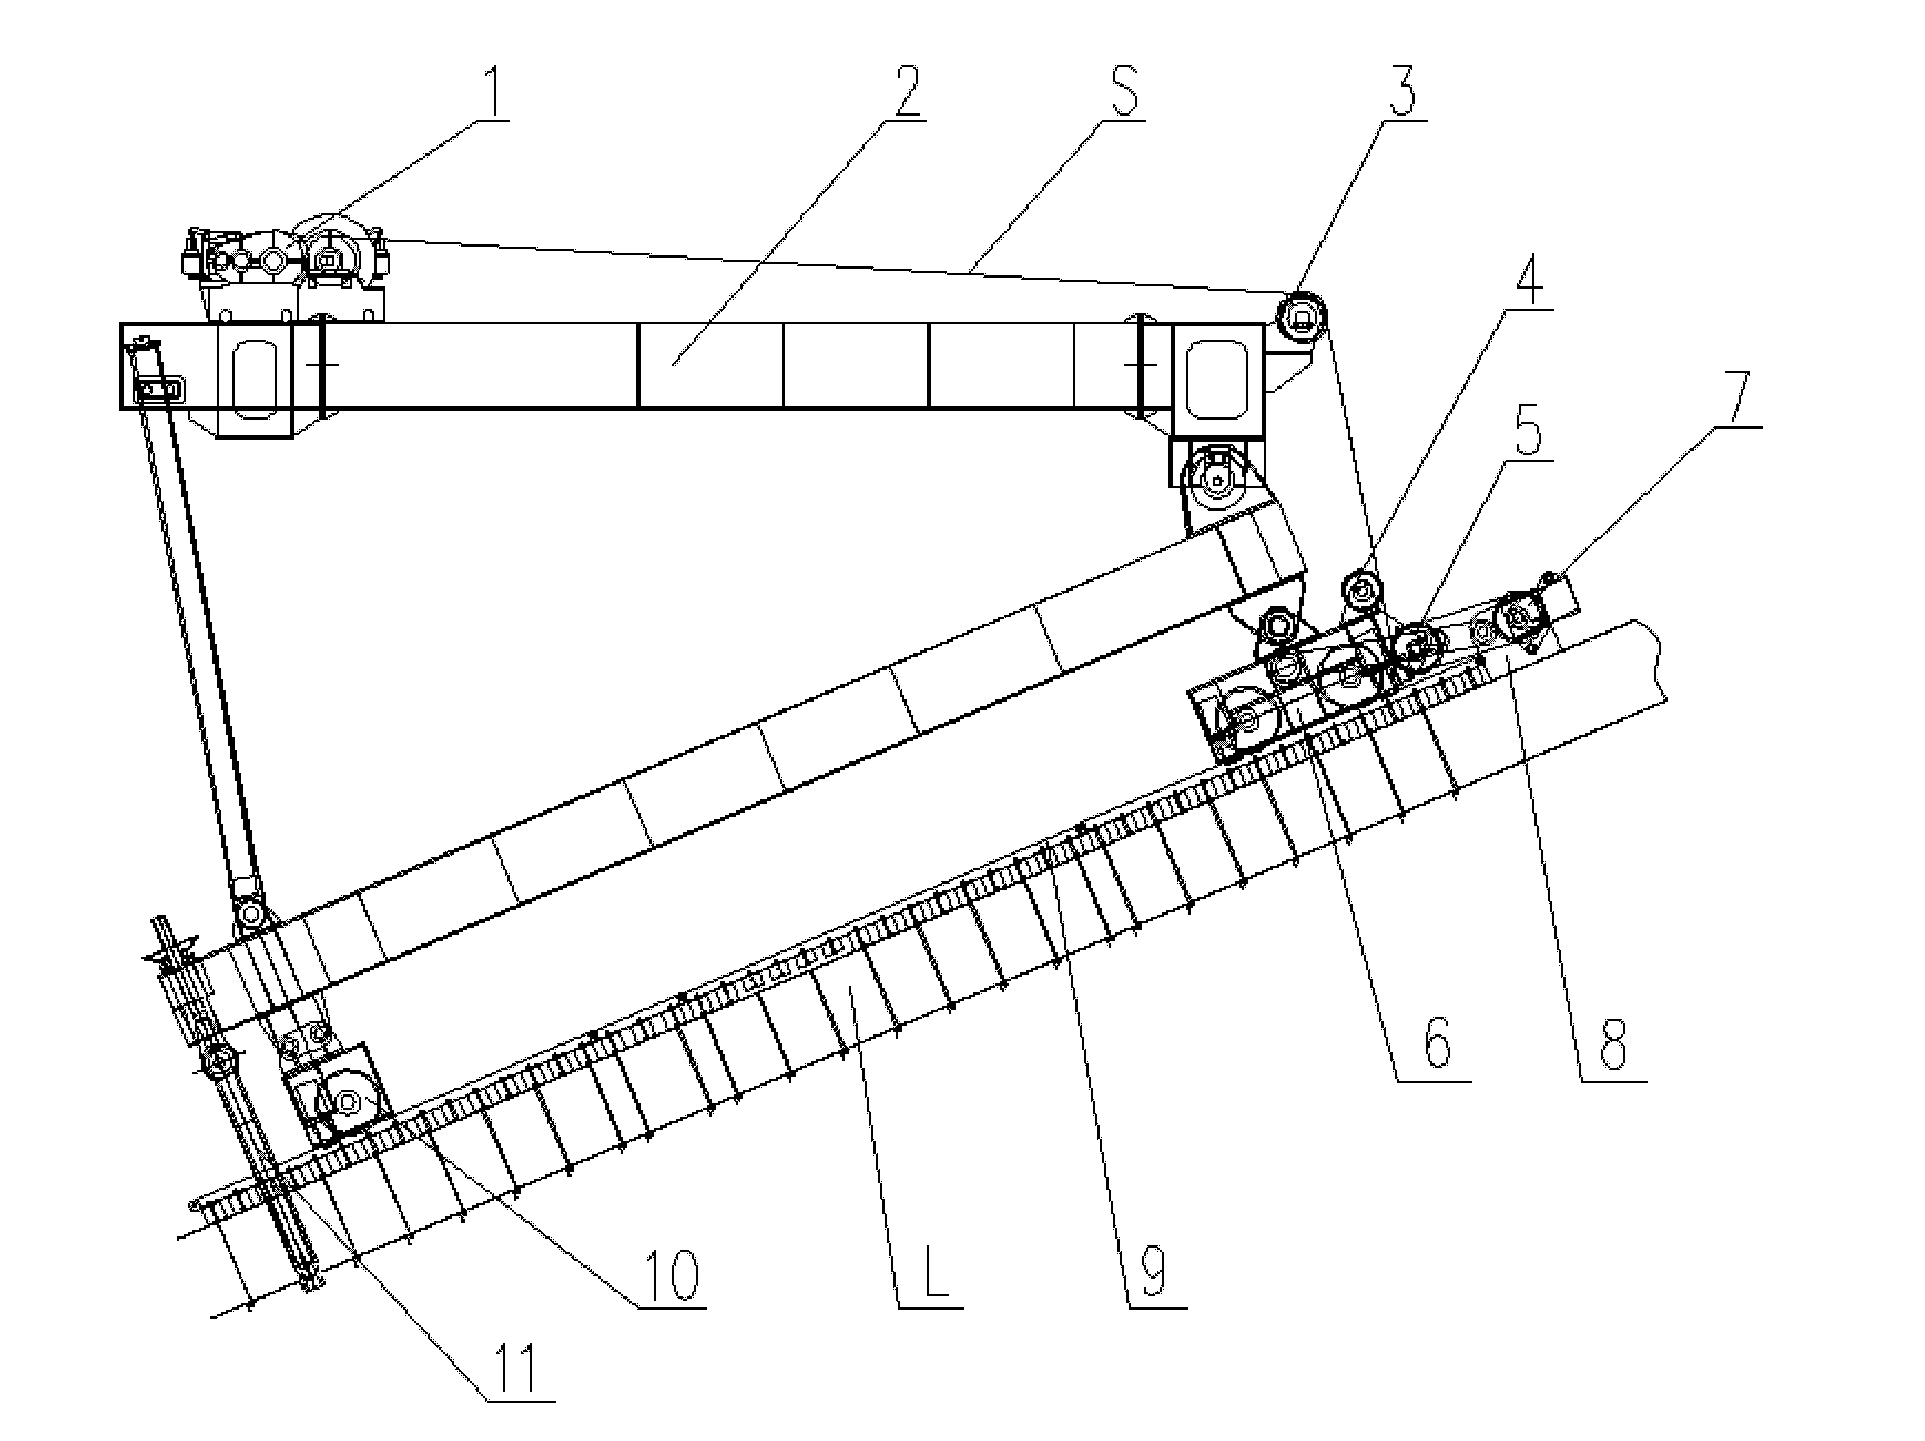 Traction running mechanism for climbing girder crane